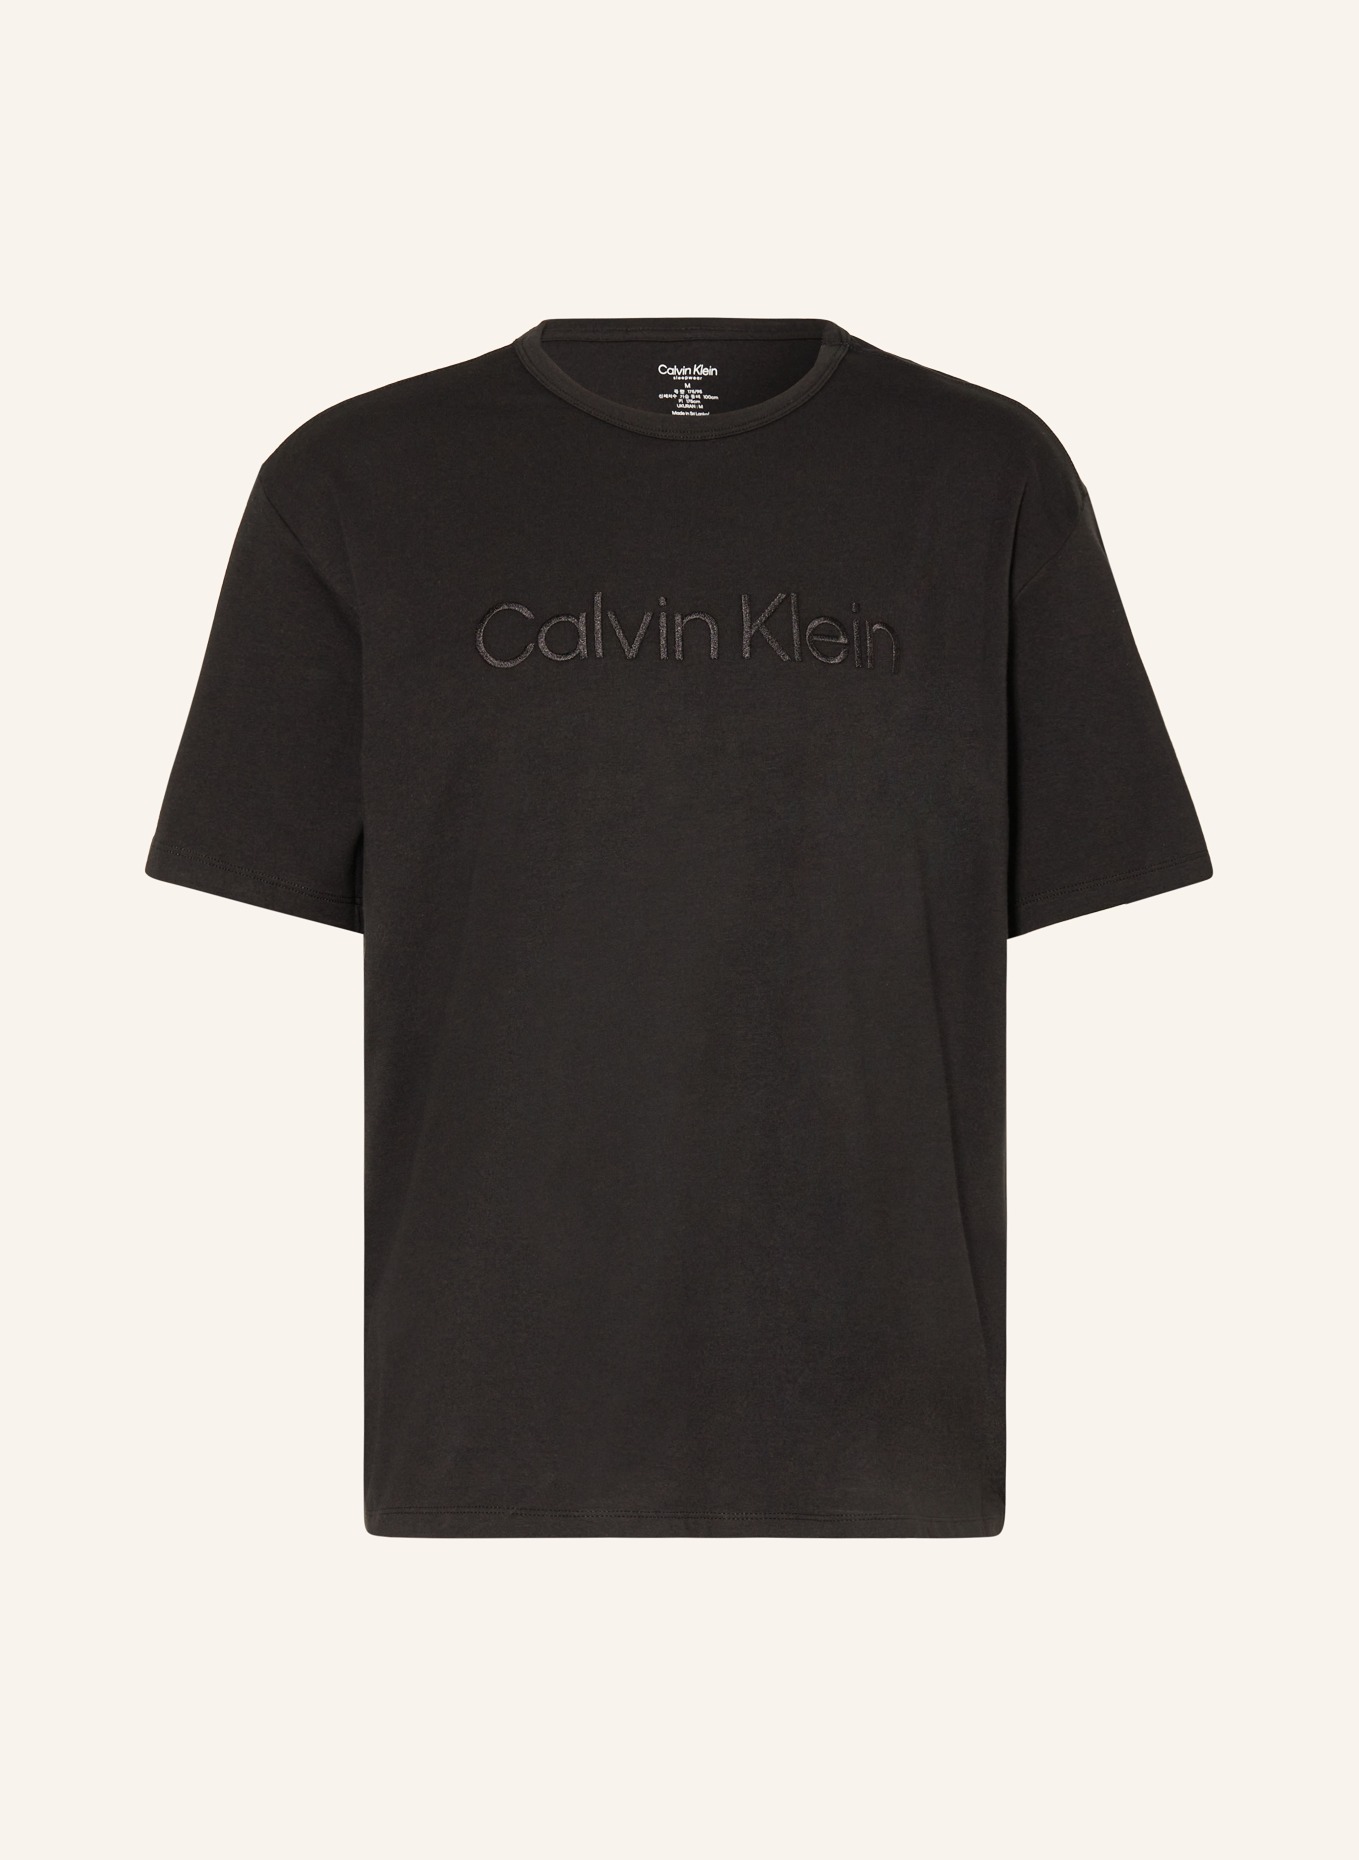 Calvin Klein Schlafshirt PURE COTTON, Farbe: SCHWARZ (Bild 1)